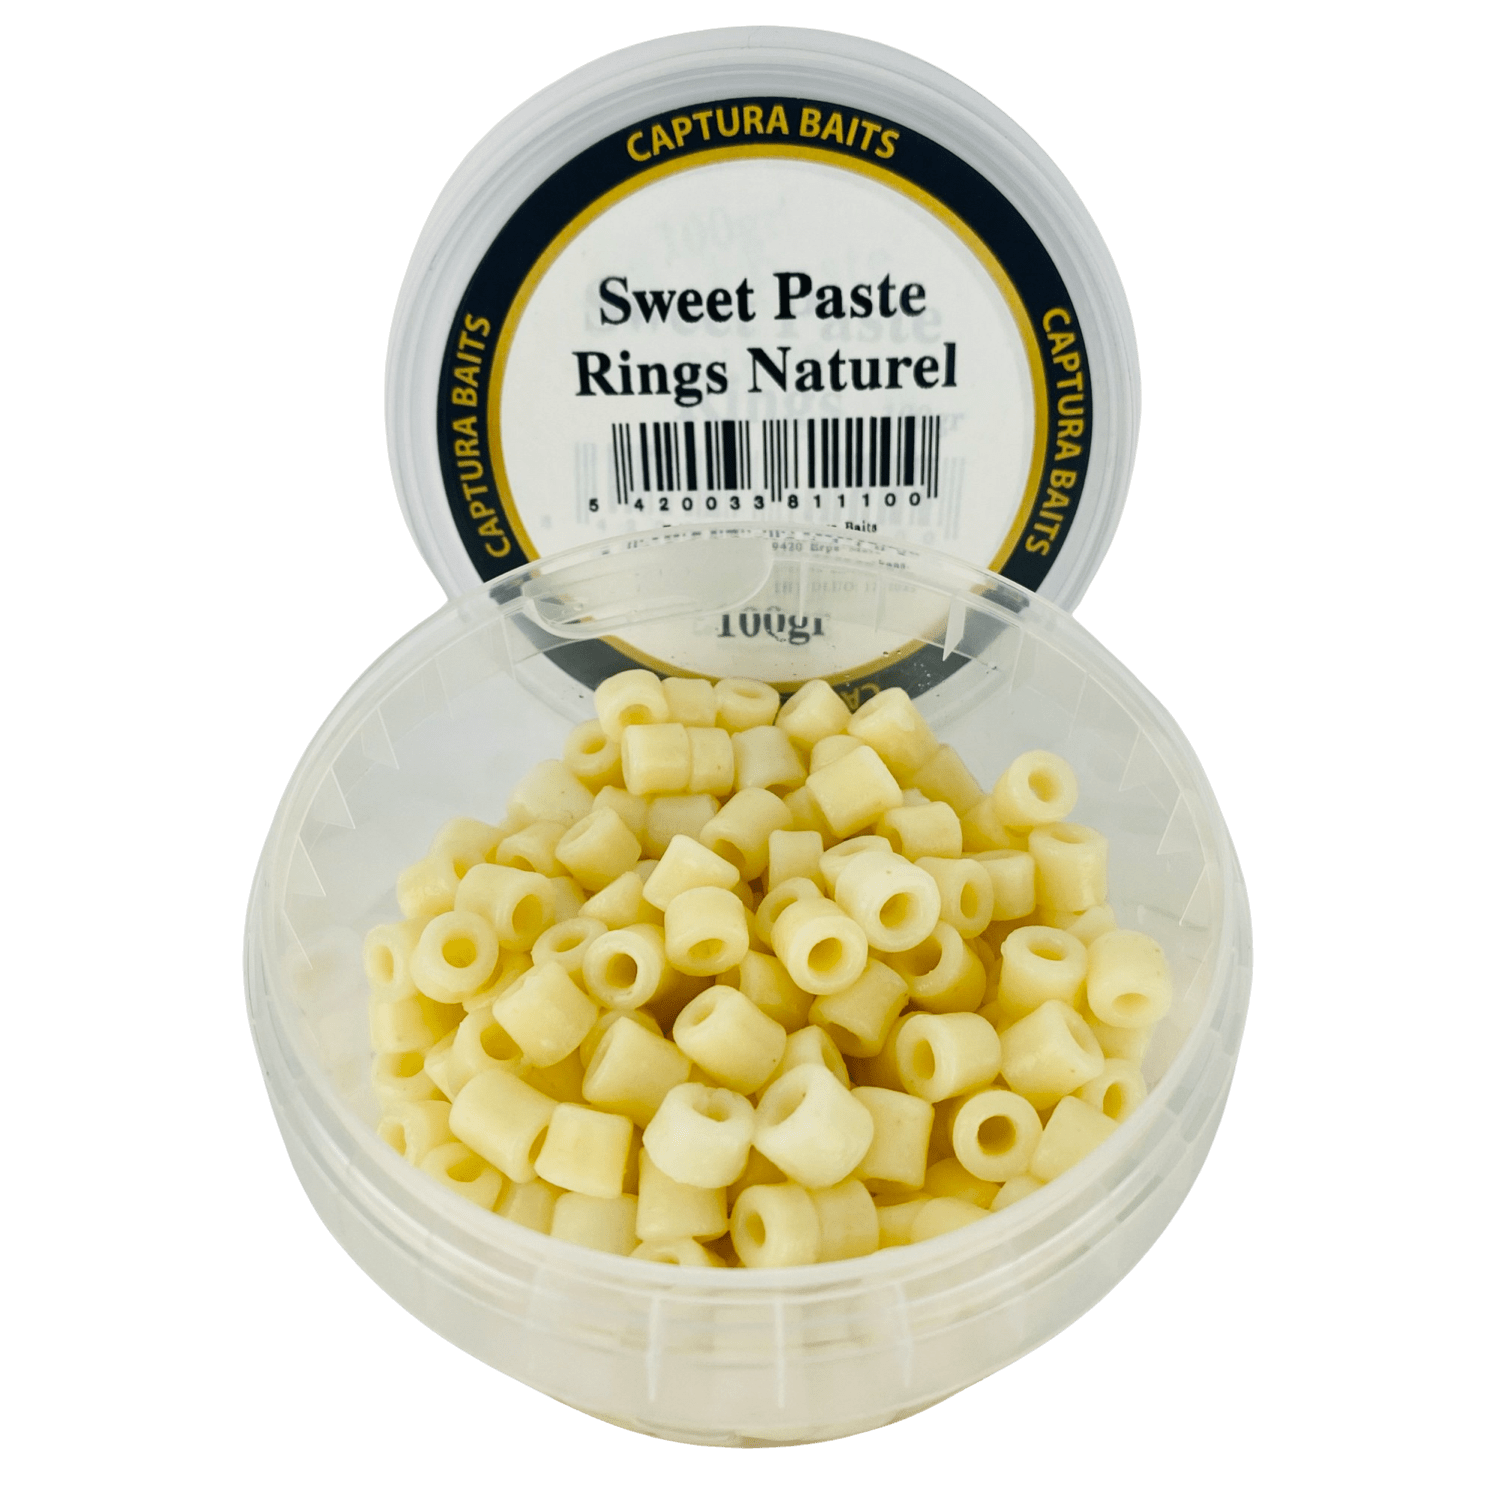 captura baits sweet paste rings pasta macaroni